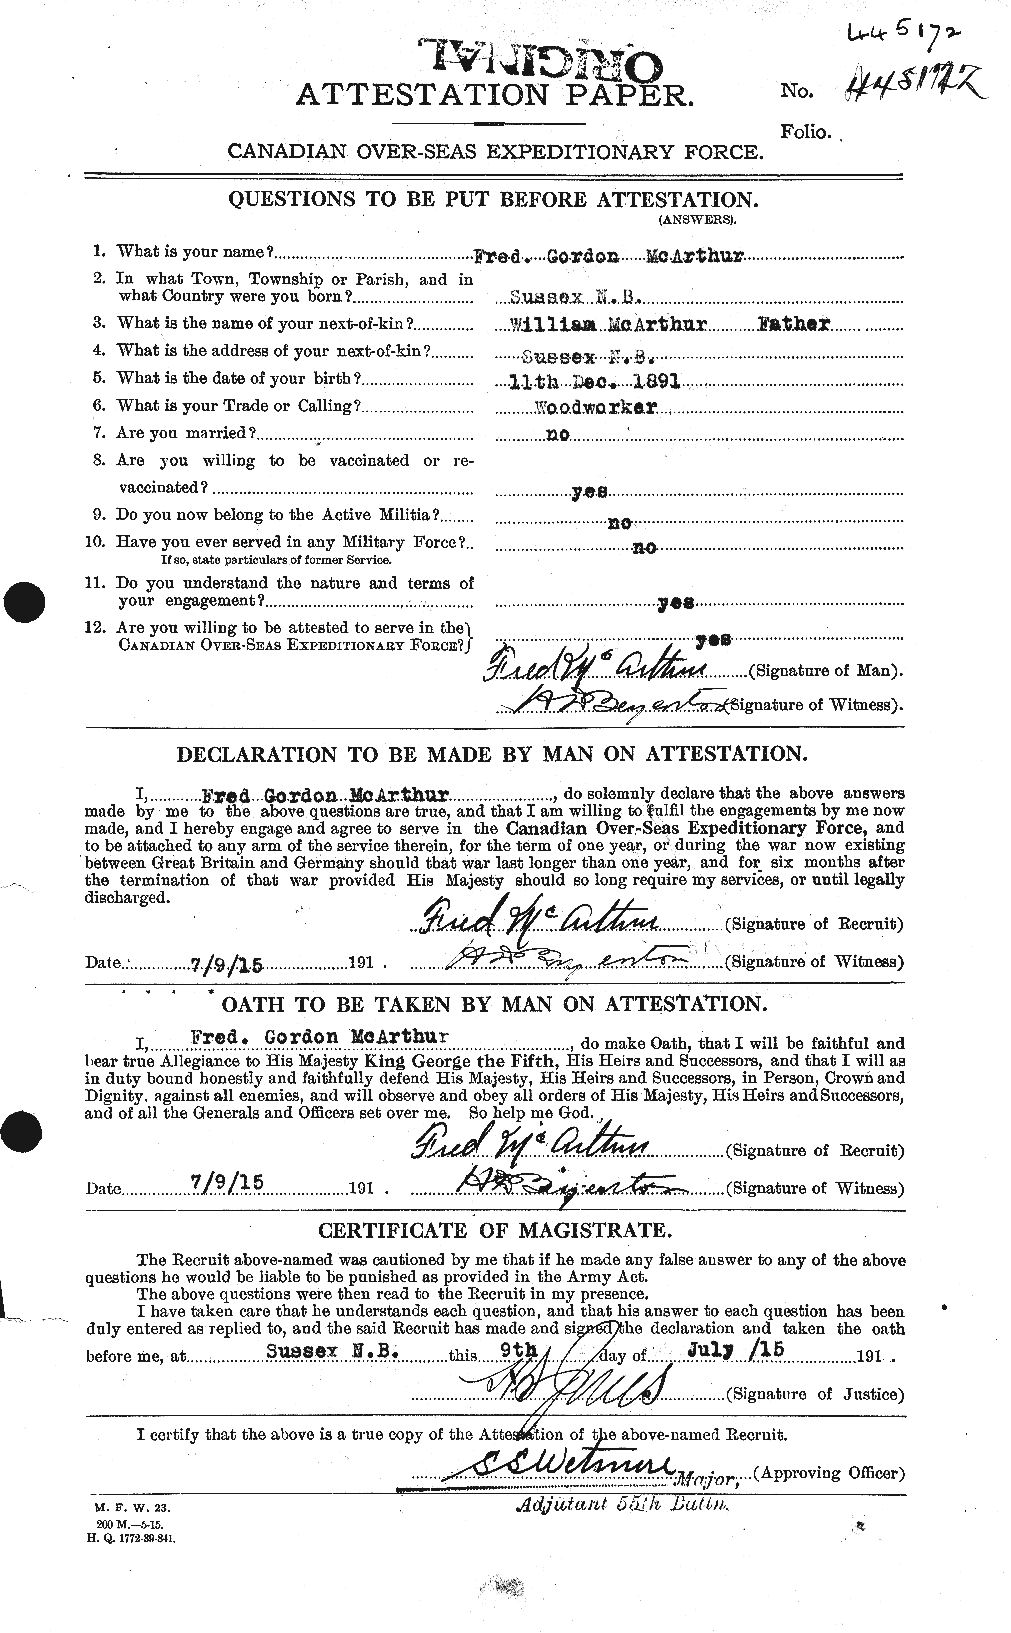 Dossiers du Personnel de la Première Guerre mondiale - CEC 131053a